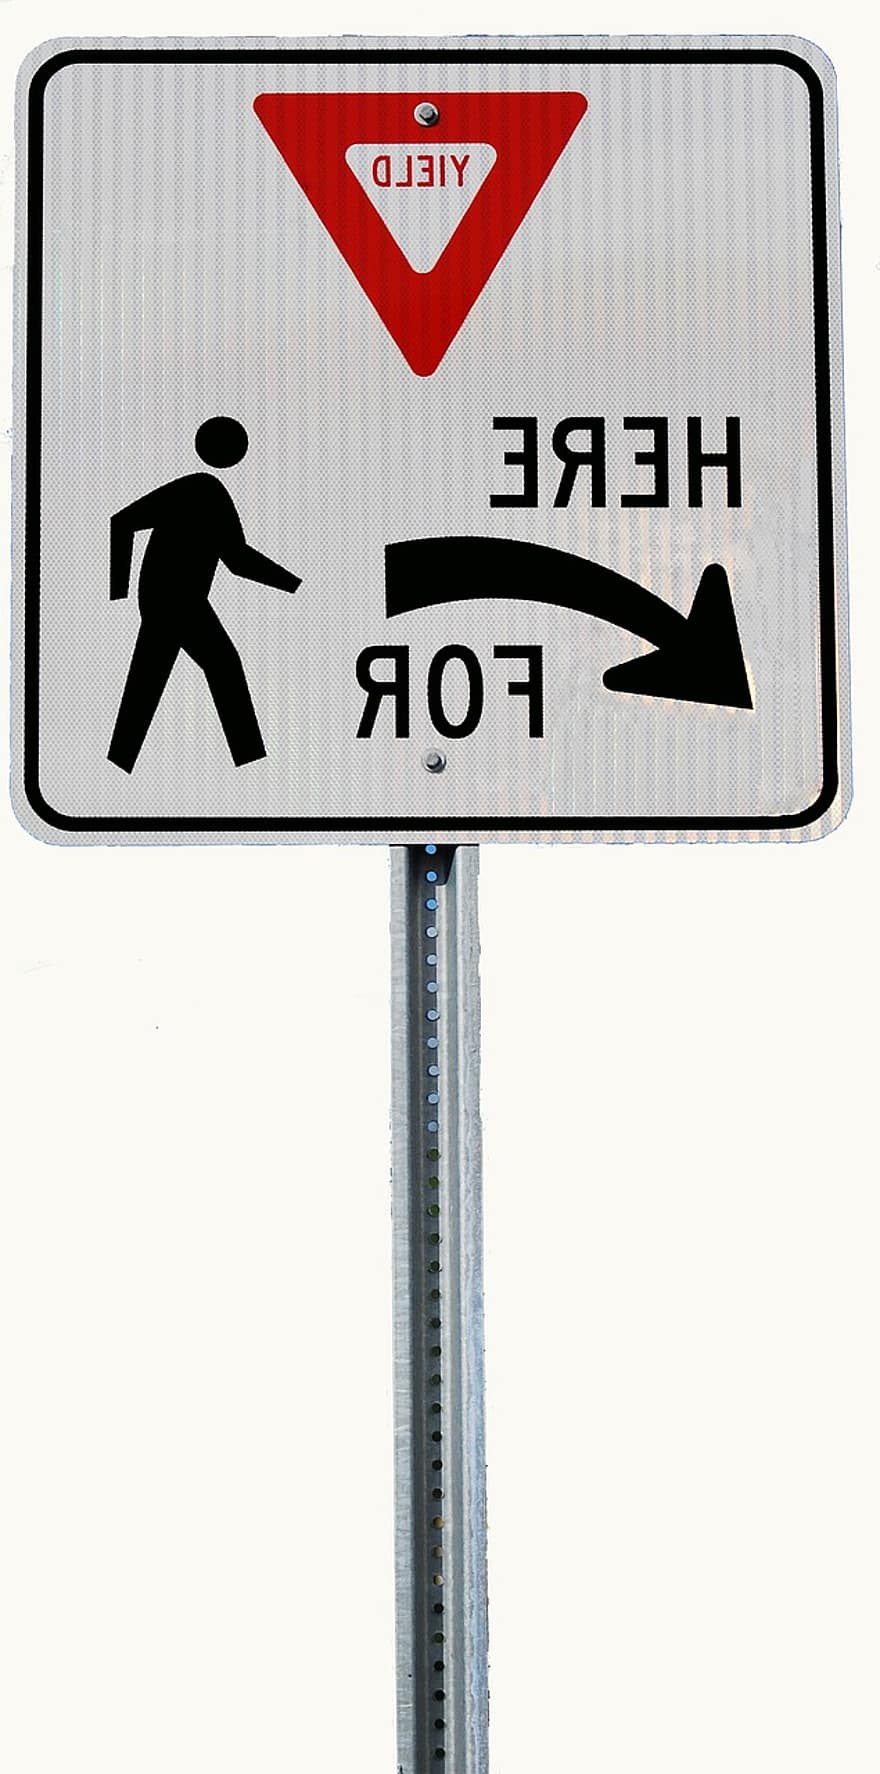 randament semn, semn de circulație, indicator, indicator stradal, avertizare, semn, semn de avertizare, simbol, trafic, semn de direcție, direcţie